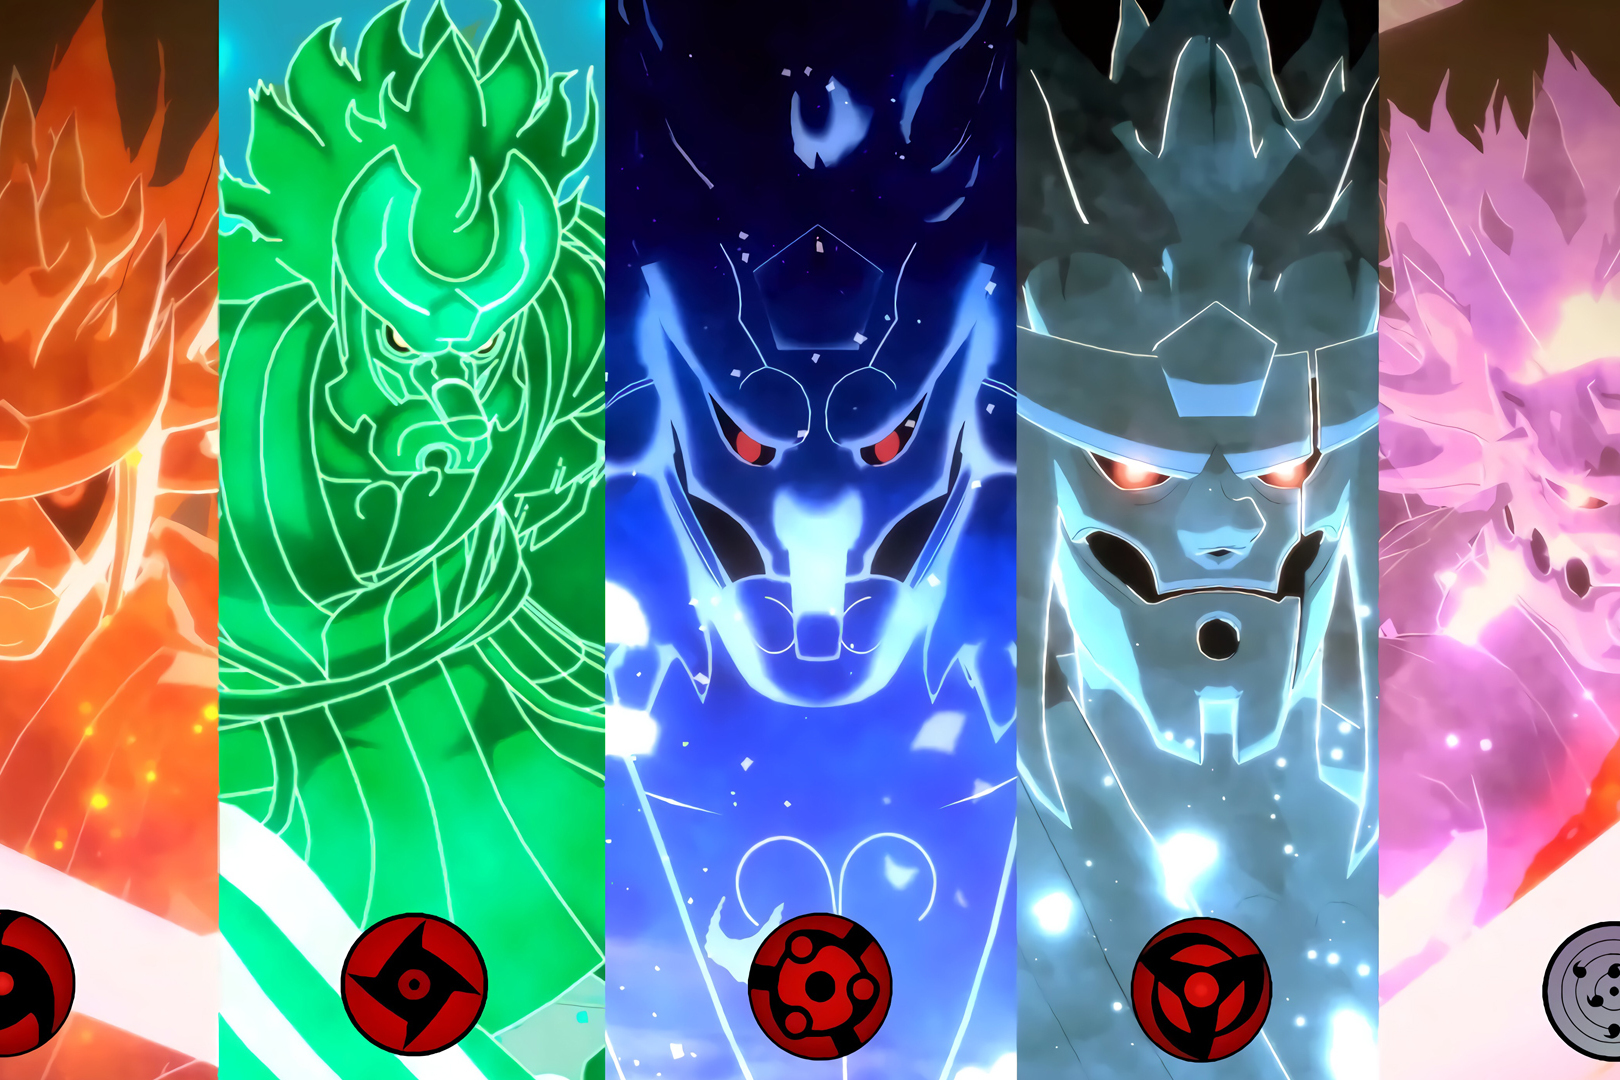 火影忍者:须佐能乎最罕见的八种忍术!你认为谁的须佐能乎最强?